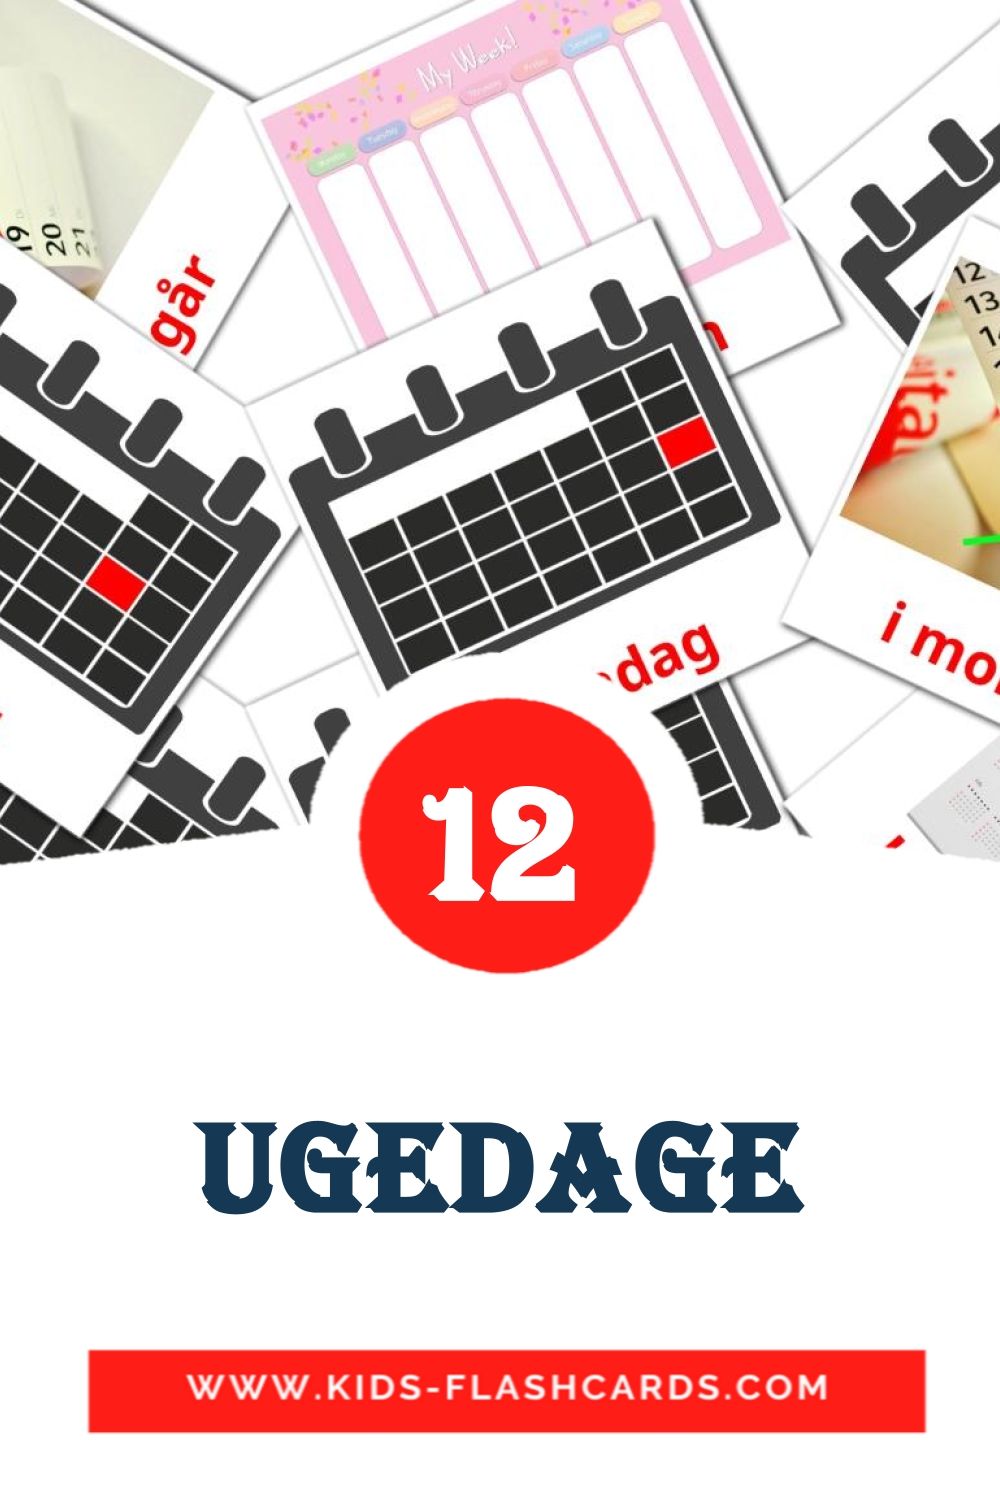 12 Ugedage fotokaarten voor kleuters in het dansk